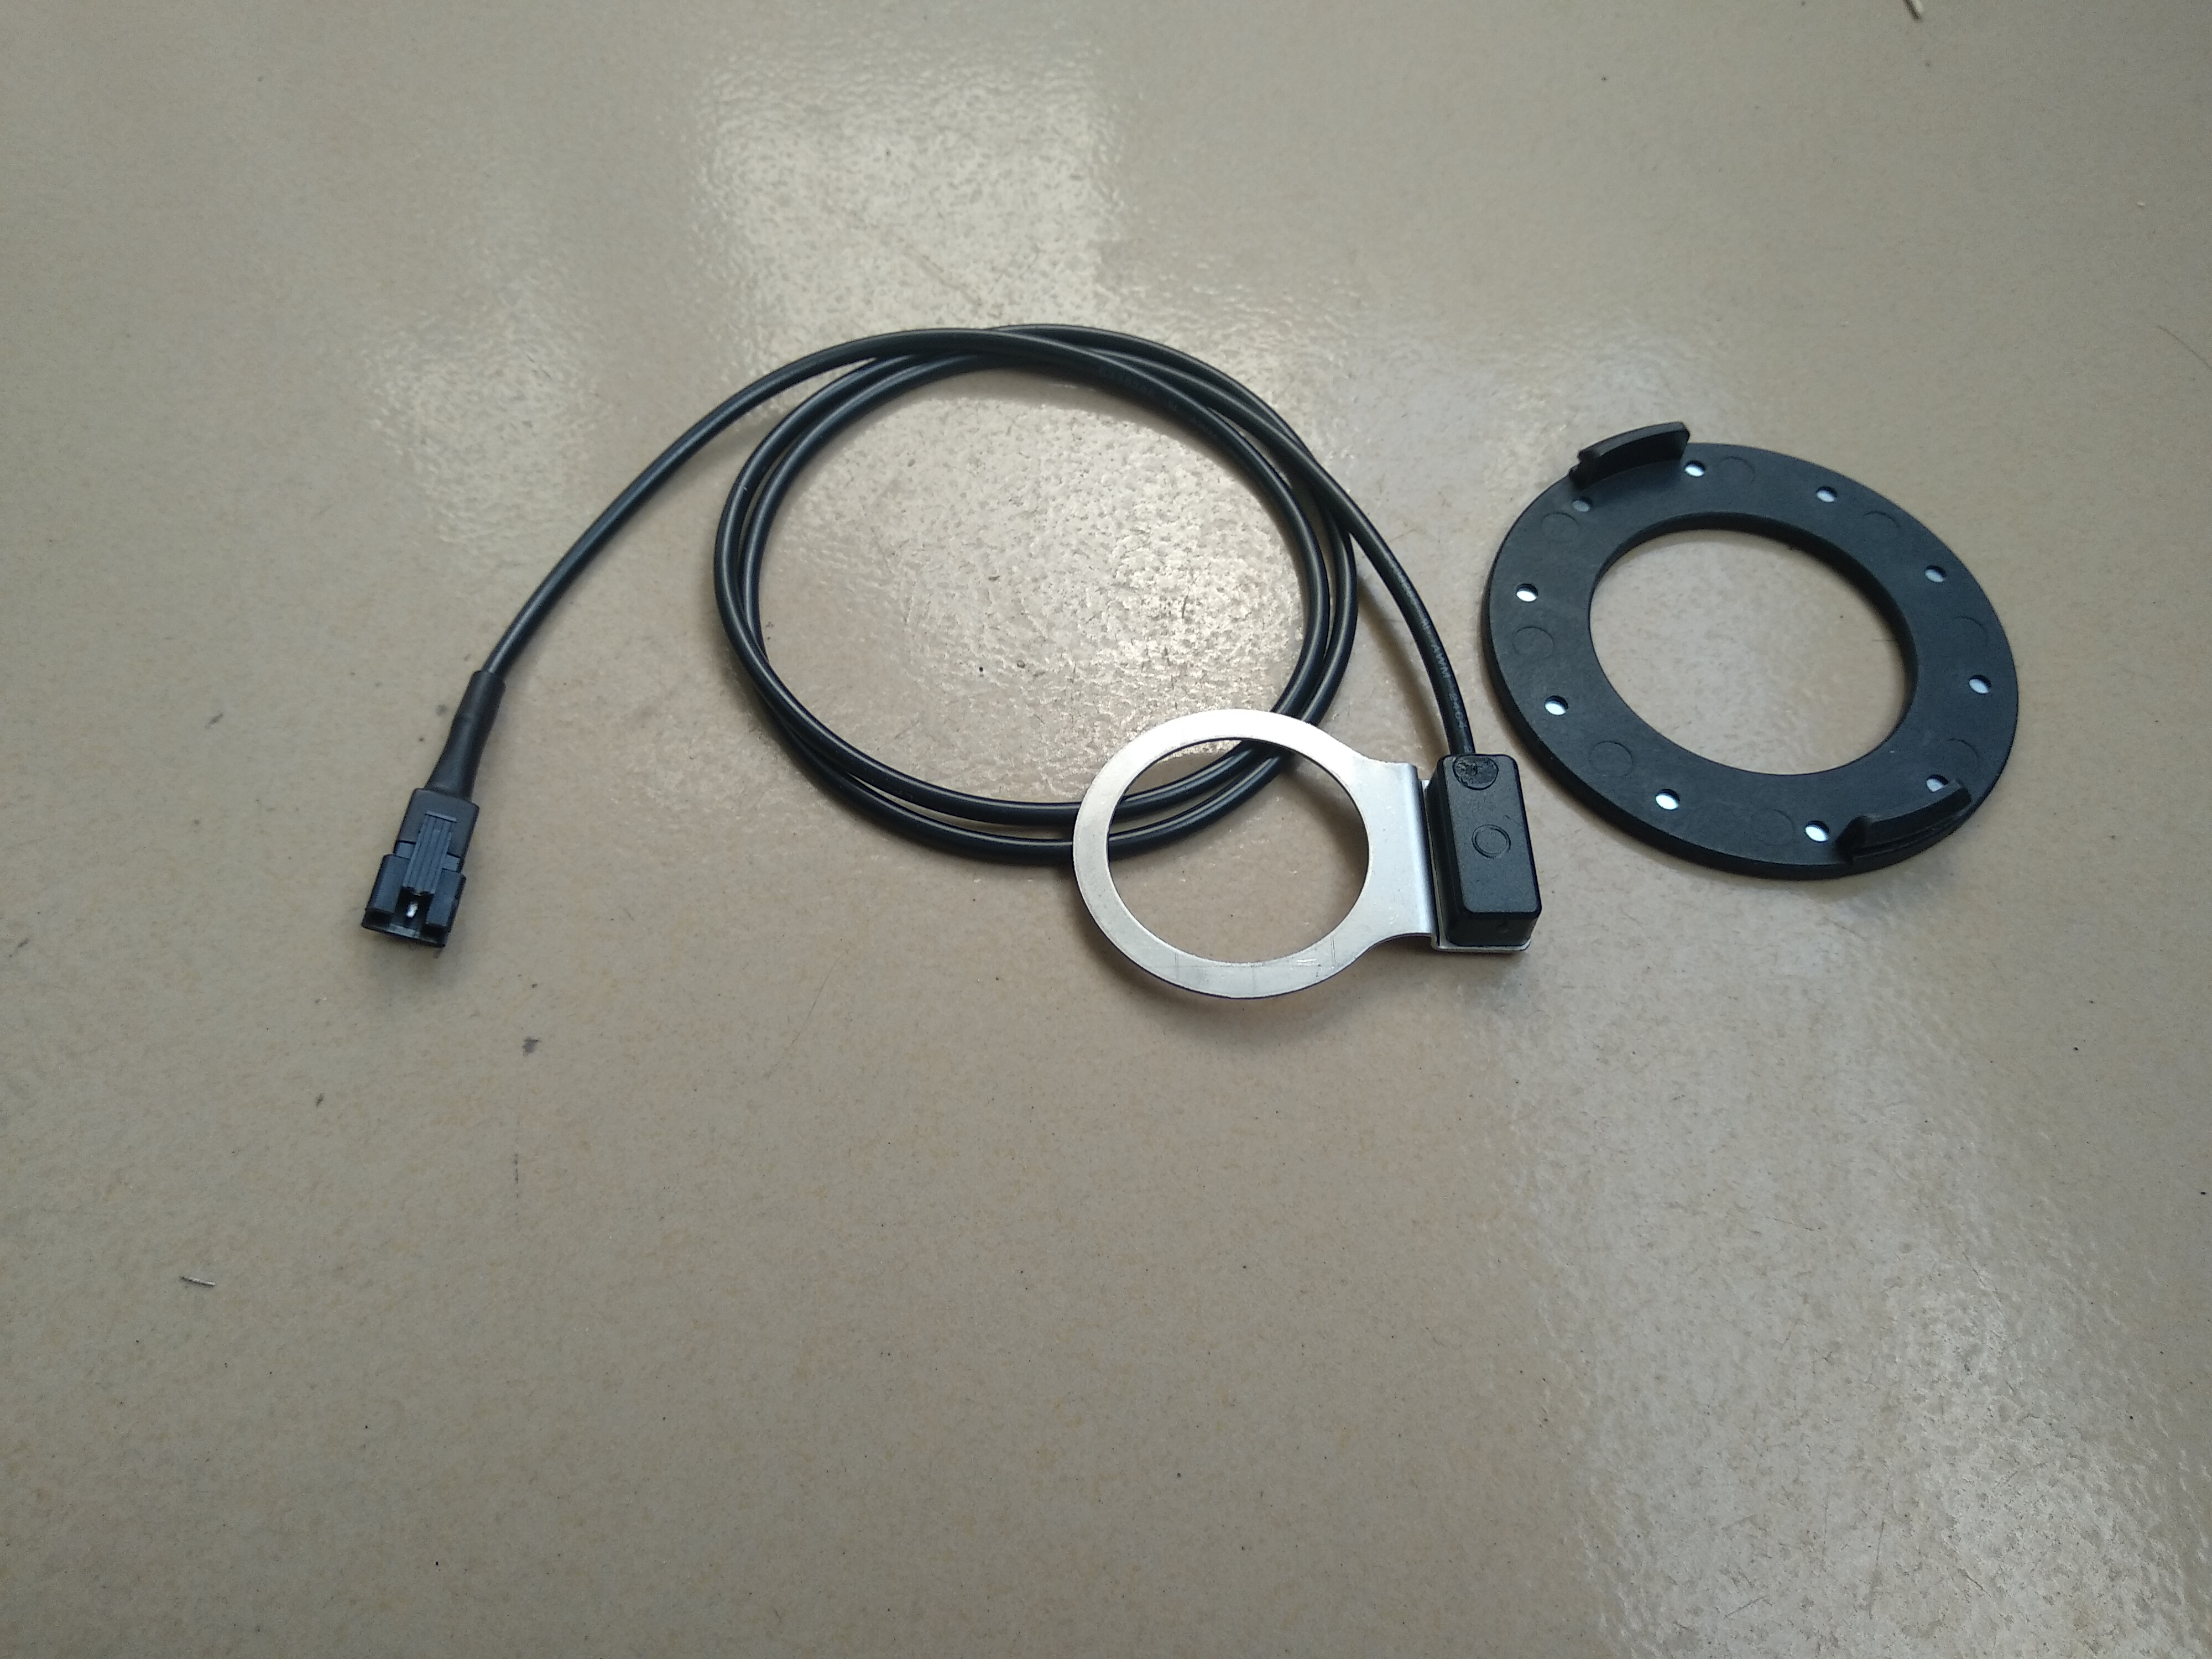 Bz -10c pas system pedal assistent sensor  kt 10 magneter til hollowtech crank kranksæt ebike konvertering kit del